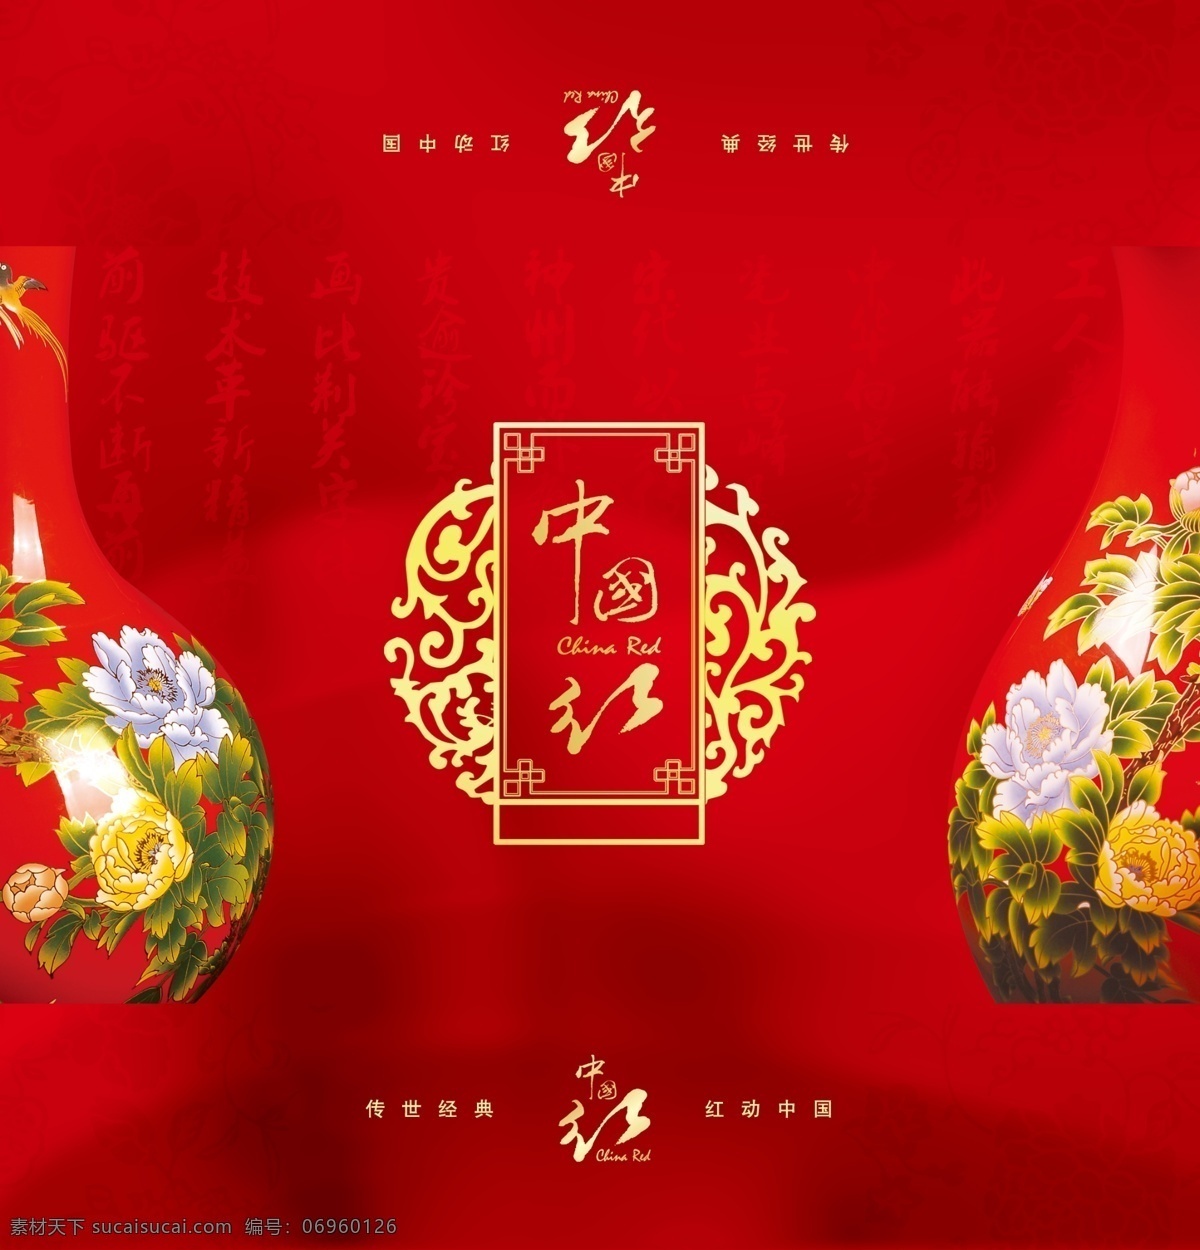 中国红包装 中国红 传统 文化 中国印象 红色 红动中国 包装盒 外包装 瓷器 彩釉 红瓷 包装设计 广告设计模板 源文件